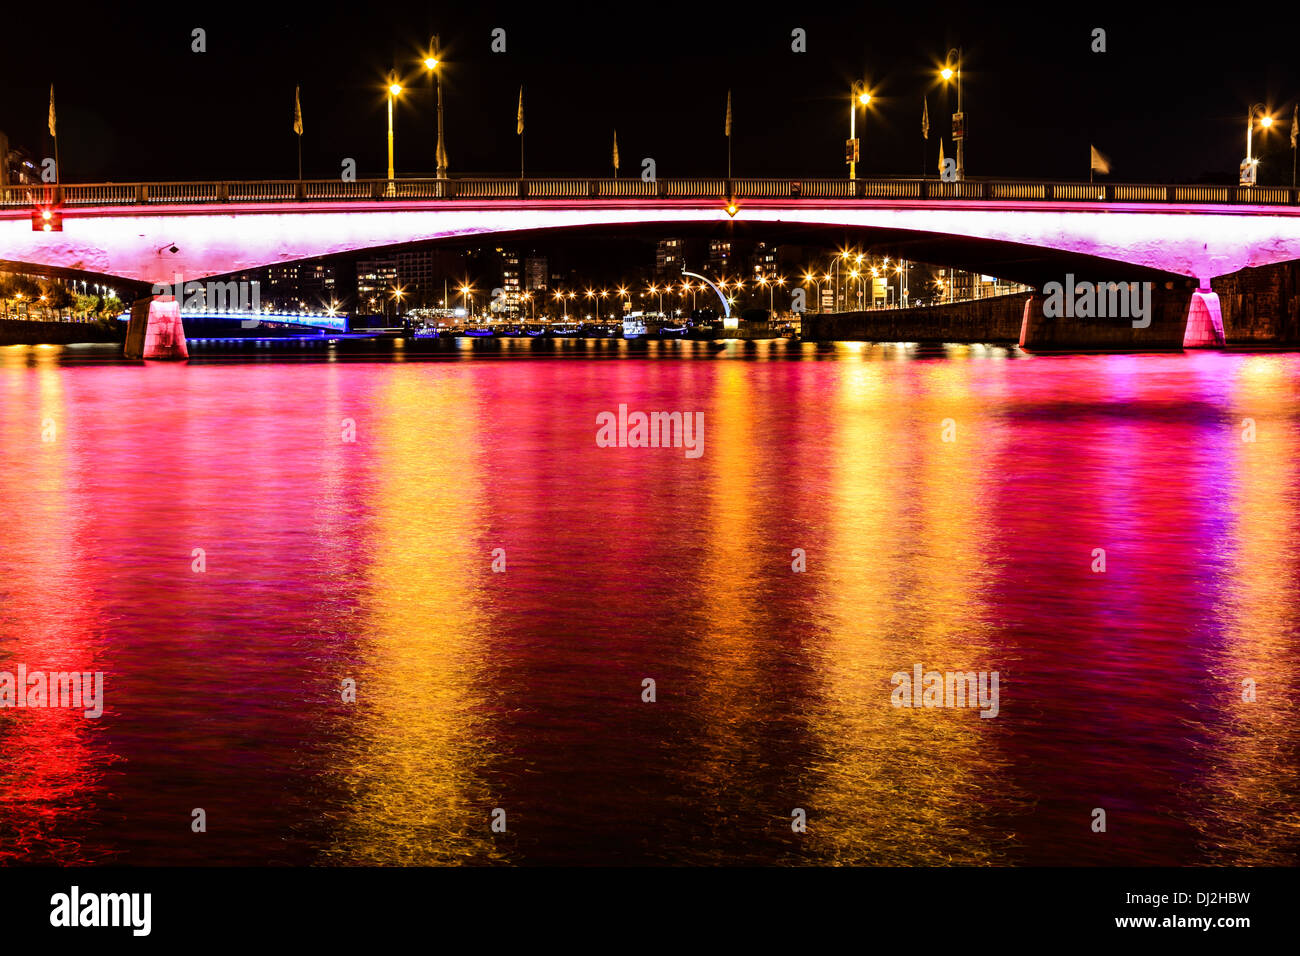 Nacht-Blick auf die "Pont des Arches" (Brücke) in der Stadt Lüttich in Belgien. Maas mit Reflexionen von Licht und Farbe. Stockfoto